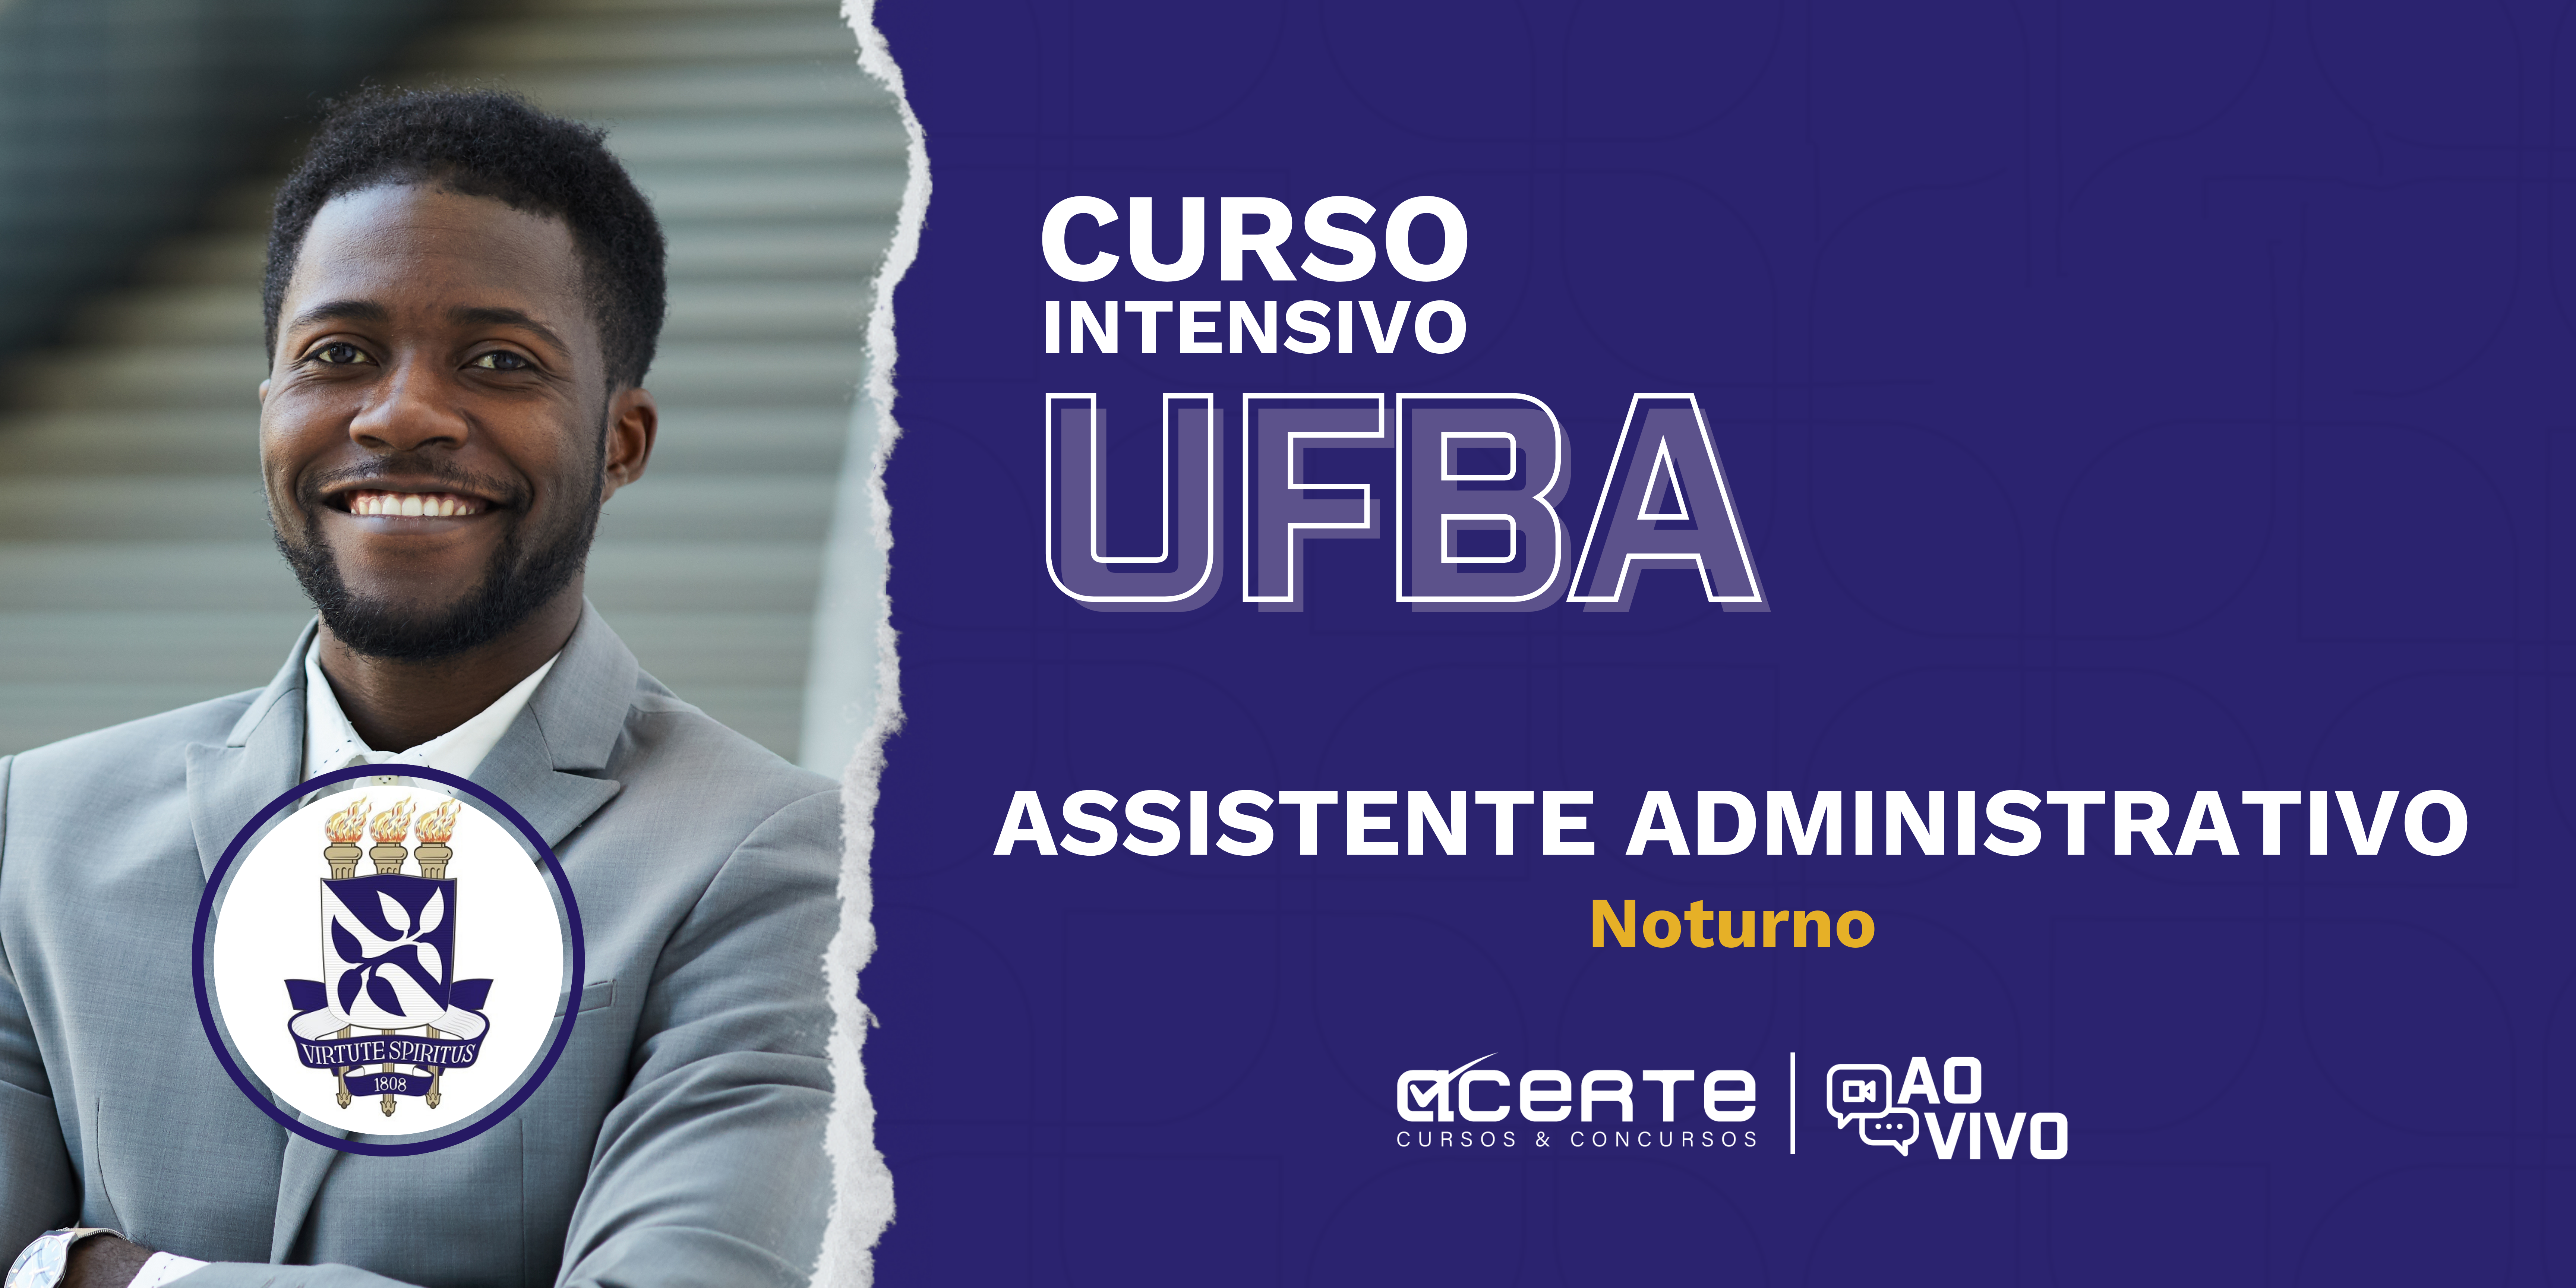 UFBA - Assistente em Administração - Edital Publicado - AO VIVO - Noturno 